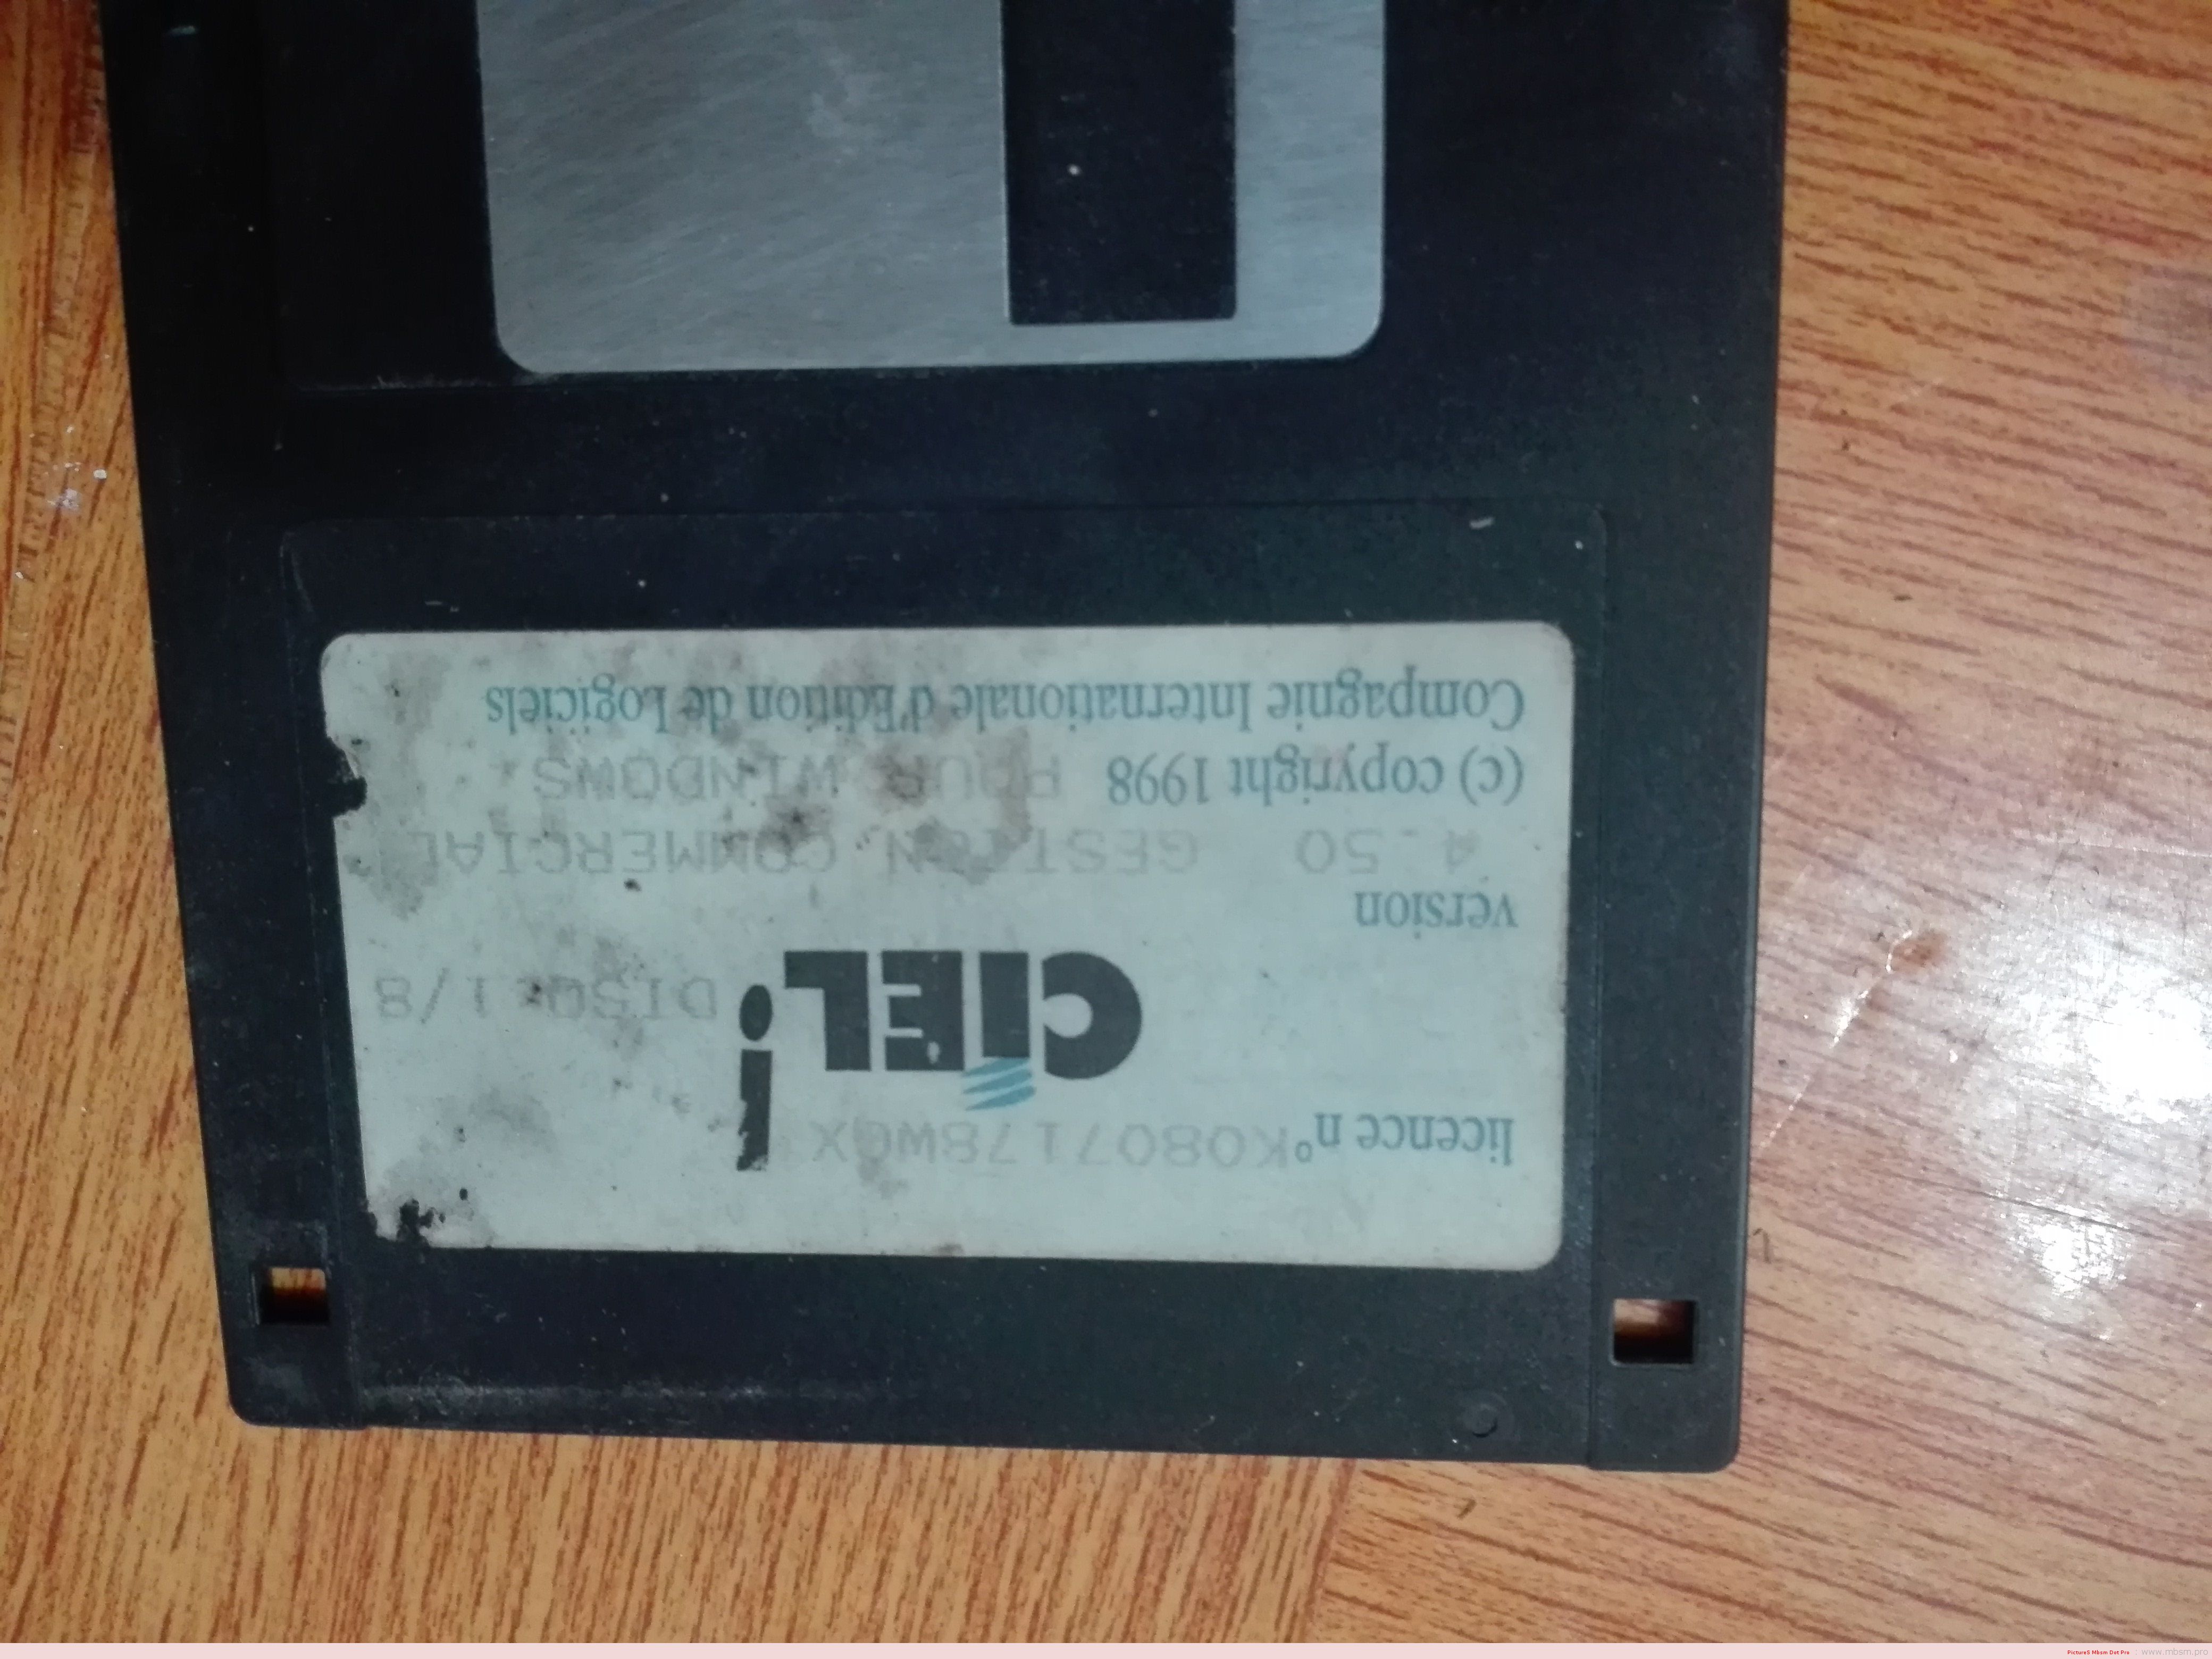 mbsmpro-1998--la-premire-foie-je-touche-une-disquette-pc-et-jinstalle-un-logiciel-mbsm-dot-pro